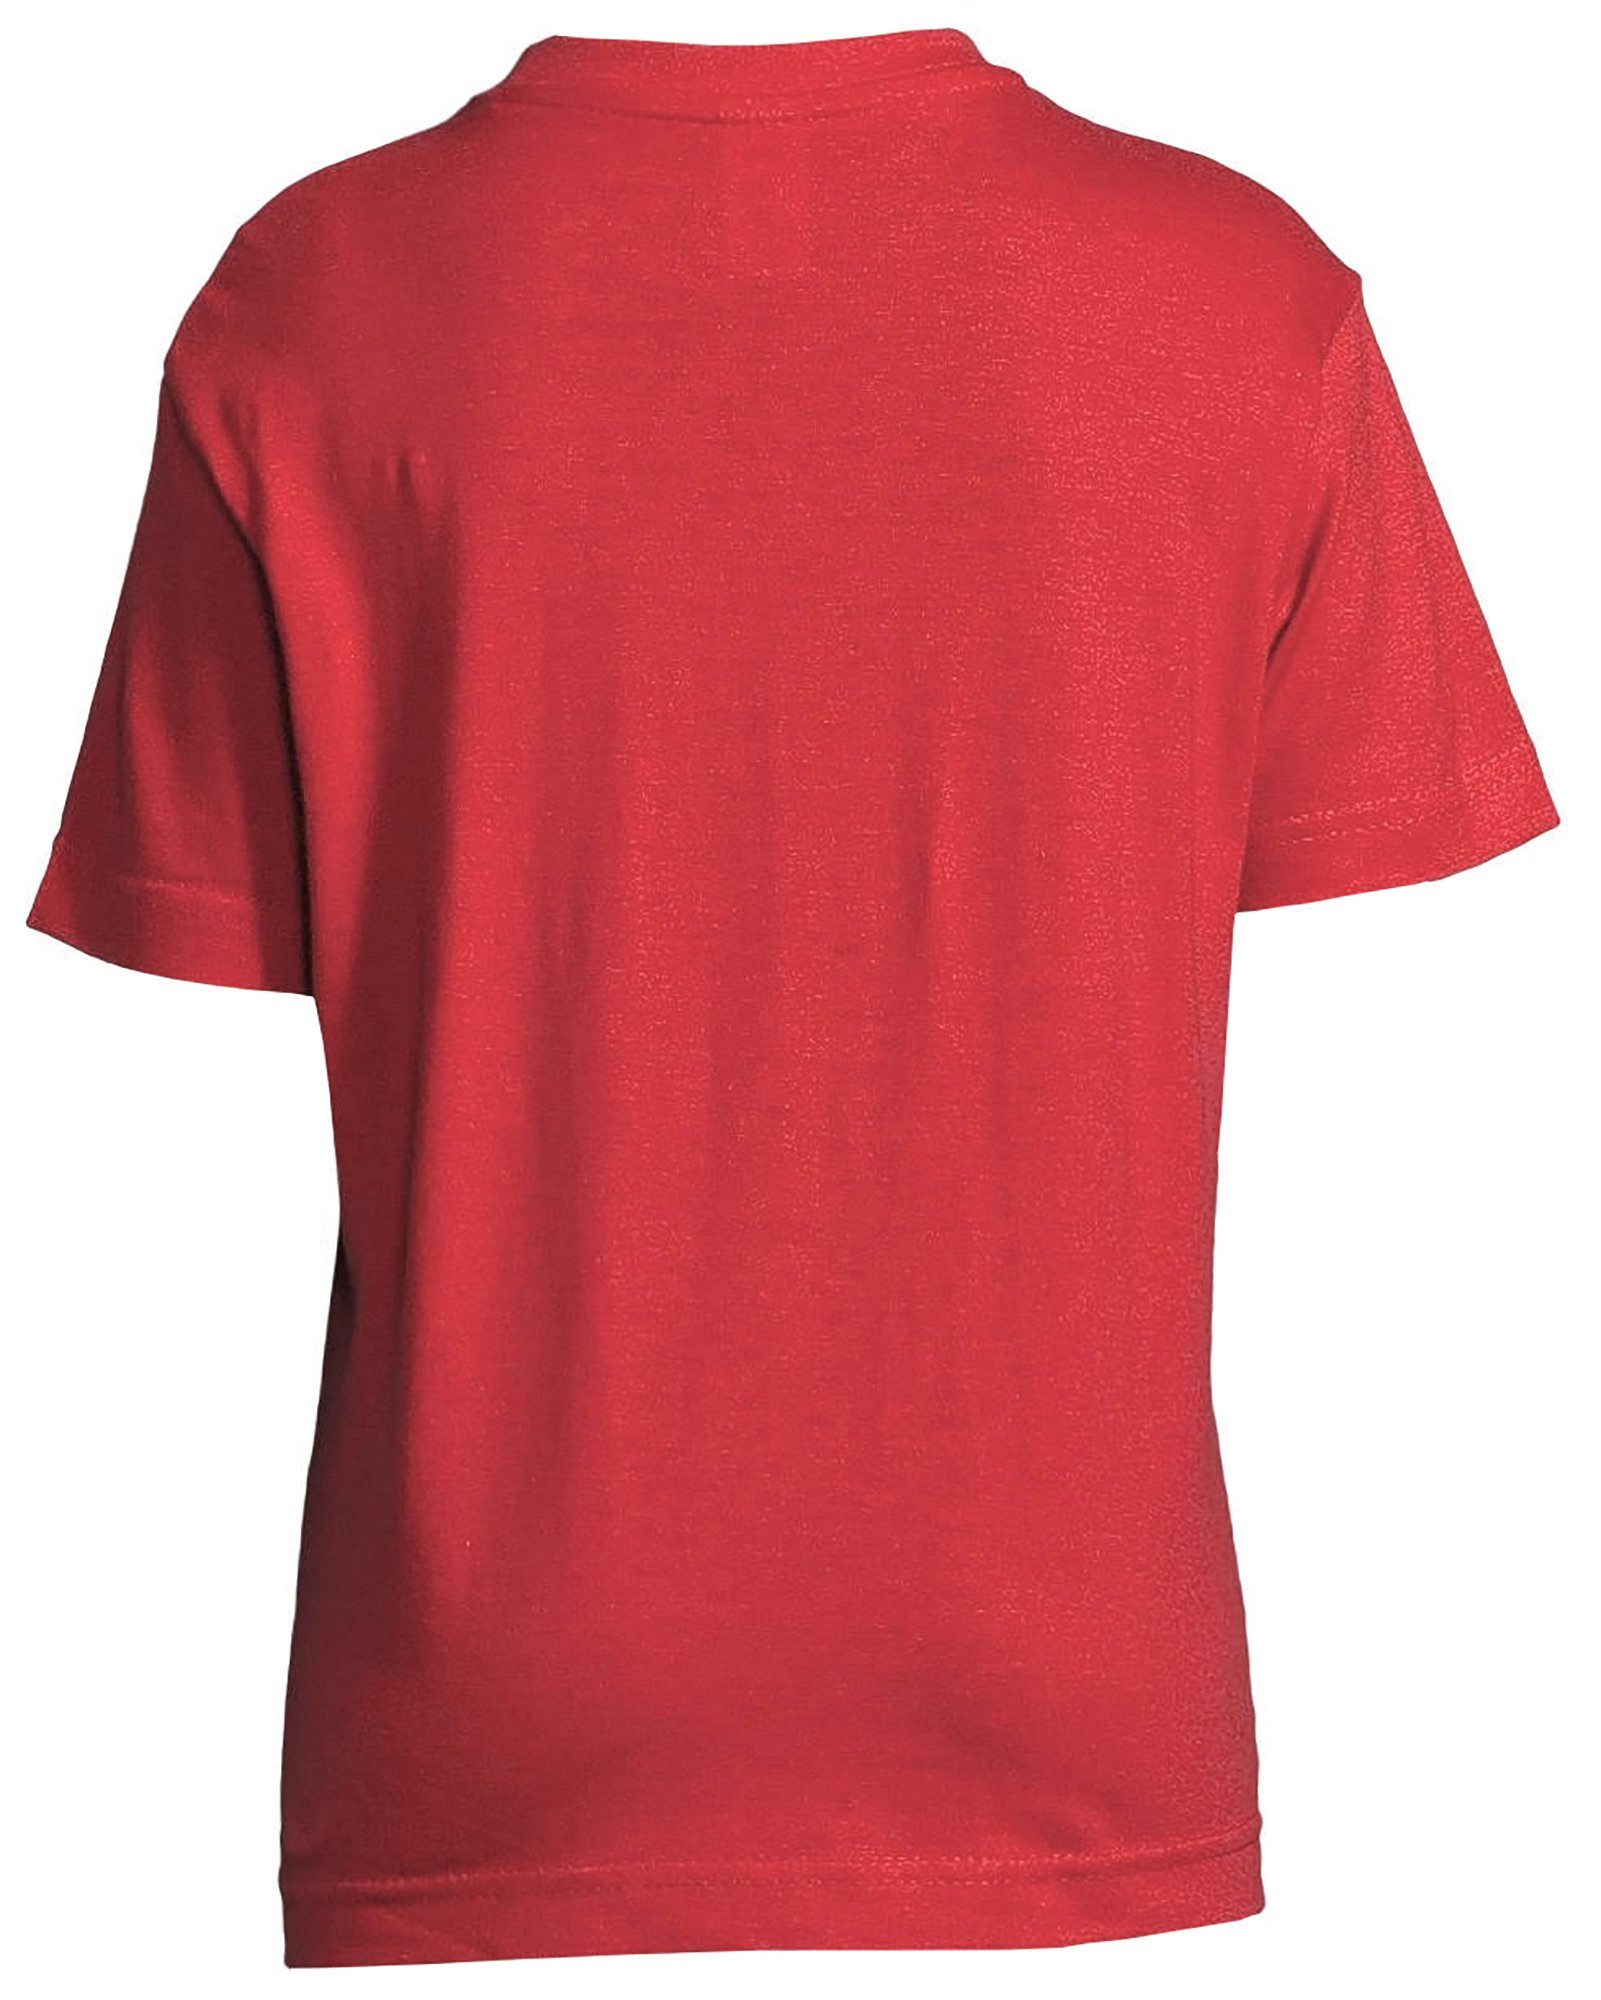 T-Shirt Katze, Mädchen rot, Retro mit rosa, Kitty schwarz, Baumwollshirt Print-Shirt Aufdruck i128 MyDesign24 mit weiß, bedrucktes